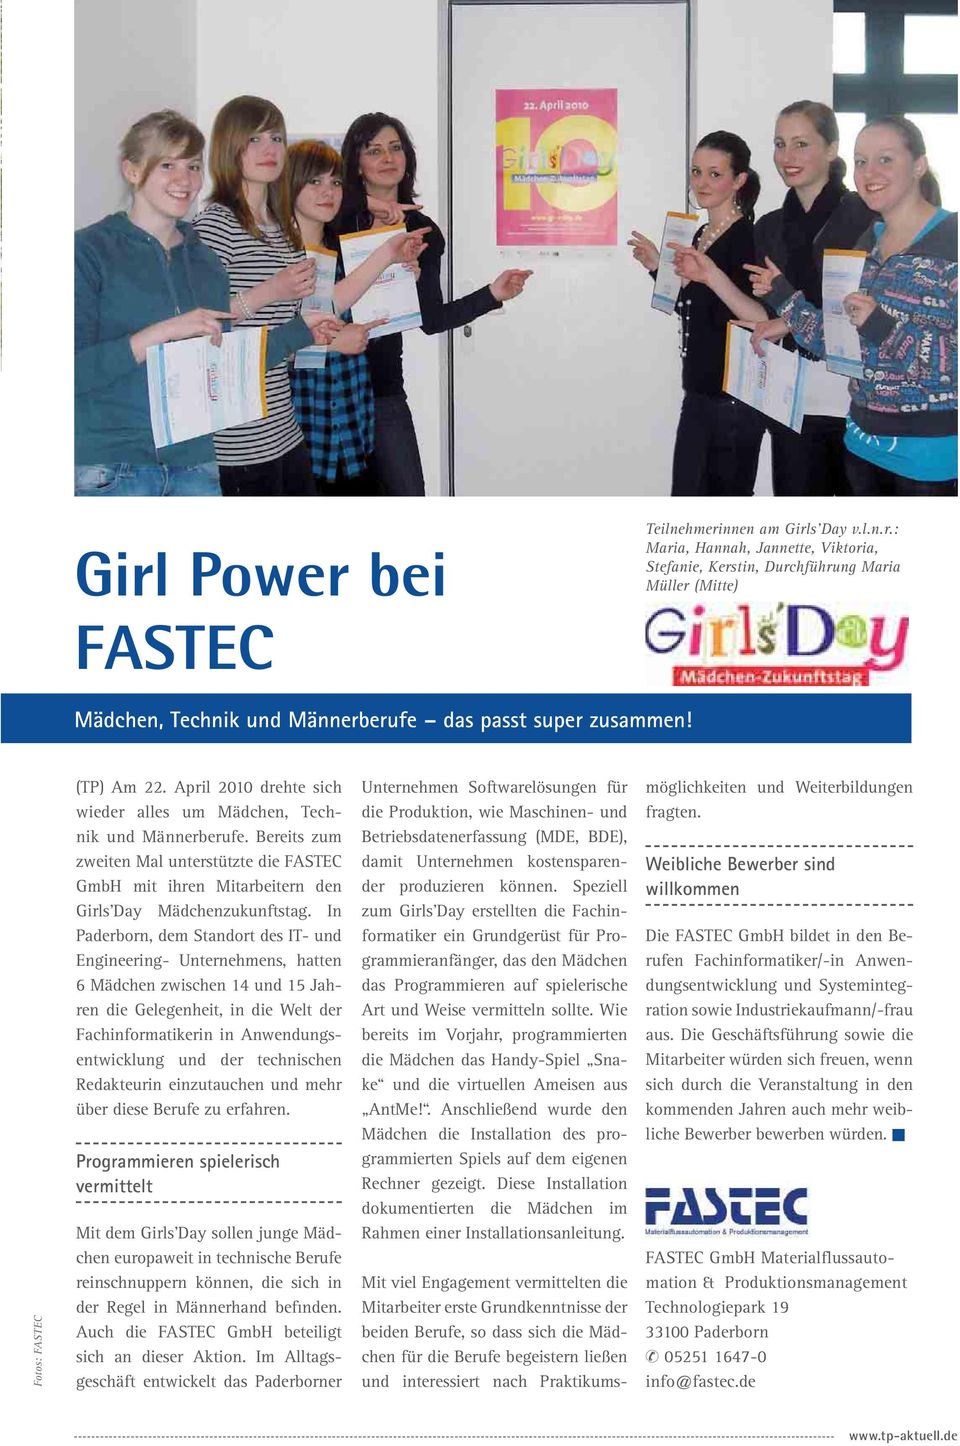 Bereits zum zweiten Mal unterstützte die FASTEC GmbH mit ihren Mitarbeitern den Girls'Day Mädchenzukunftstag.